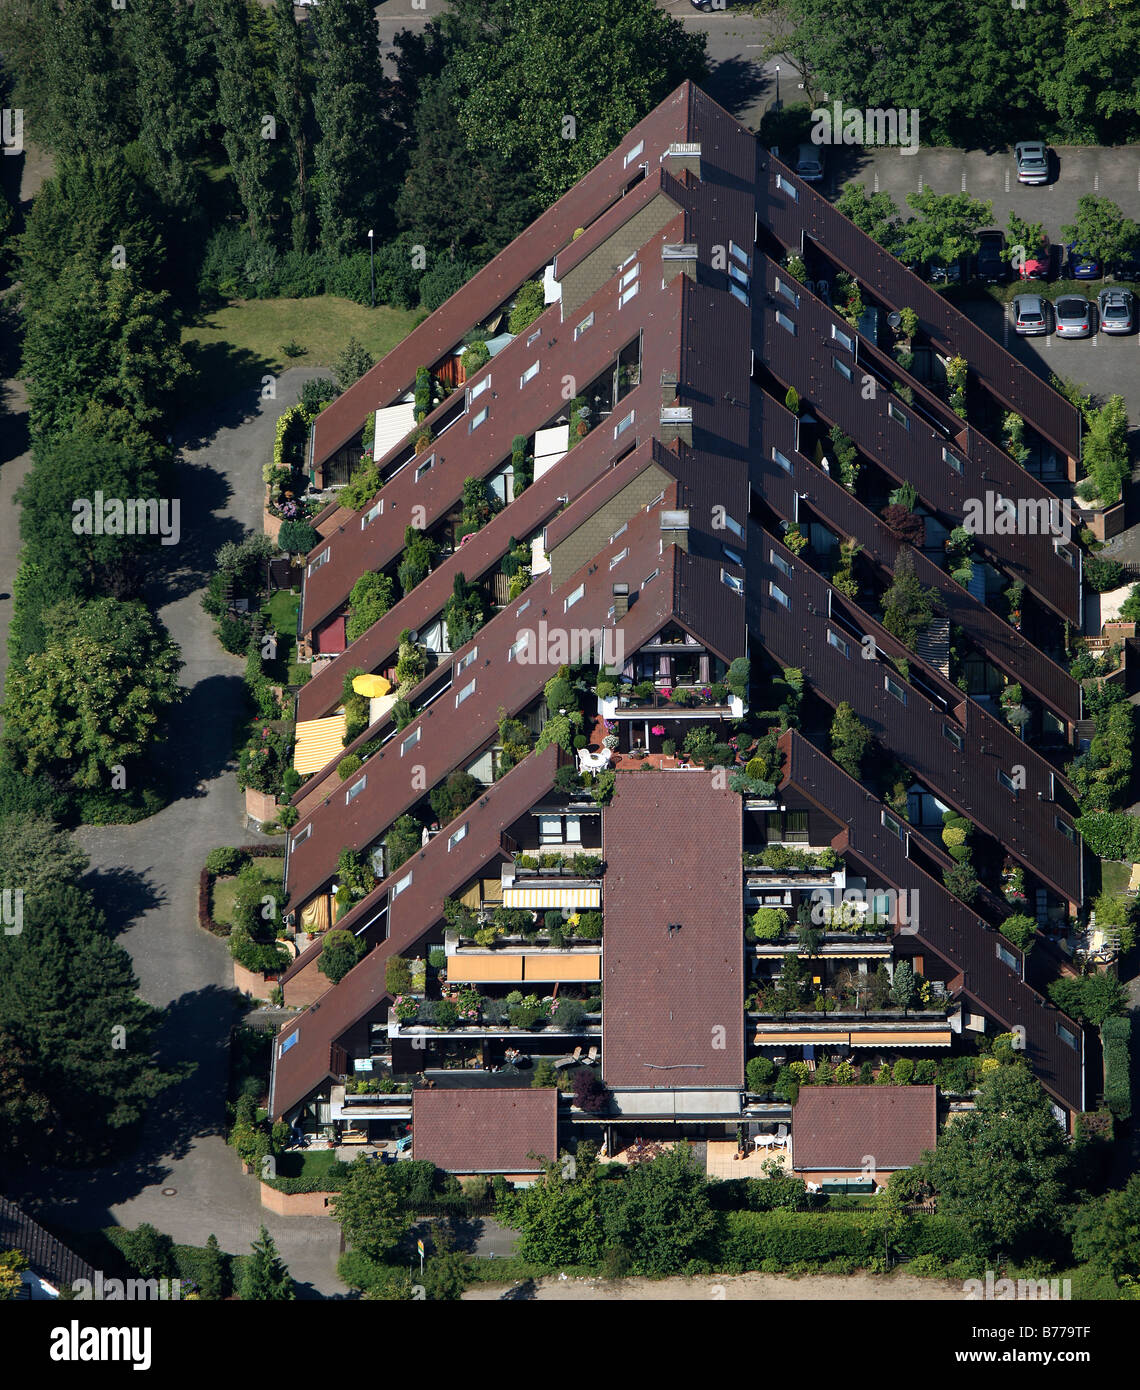 Fotografia aerea, edificio piramidale, edificio terrazzato, Drewer insediamento, Marl, distretto della Ruhr, Renania settentrionale-Vestfalia, Germa Foto Stock